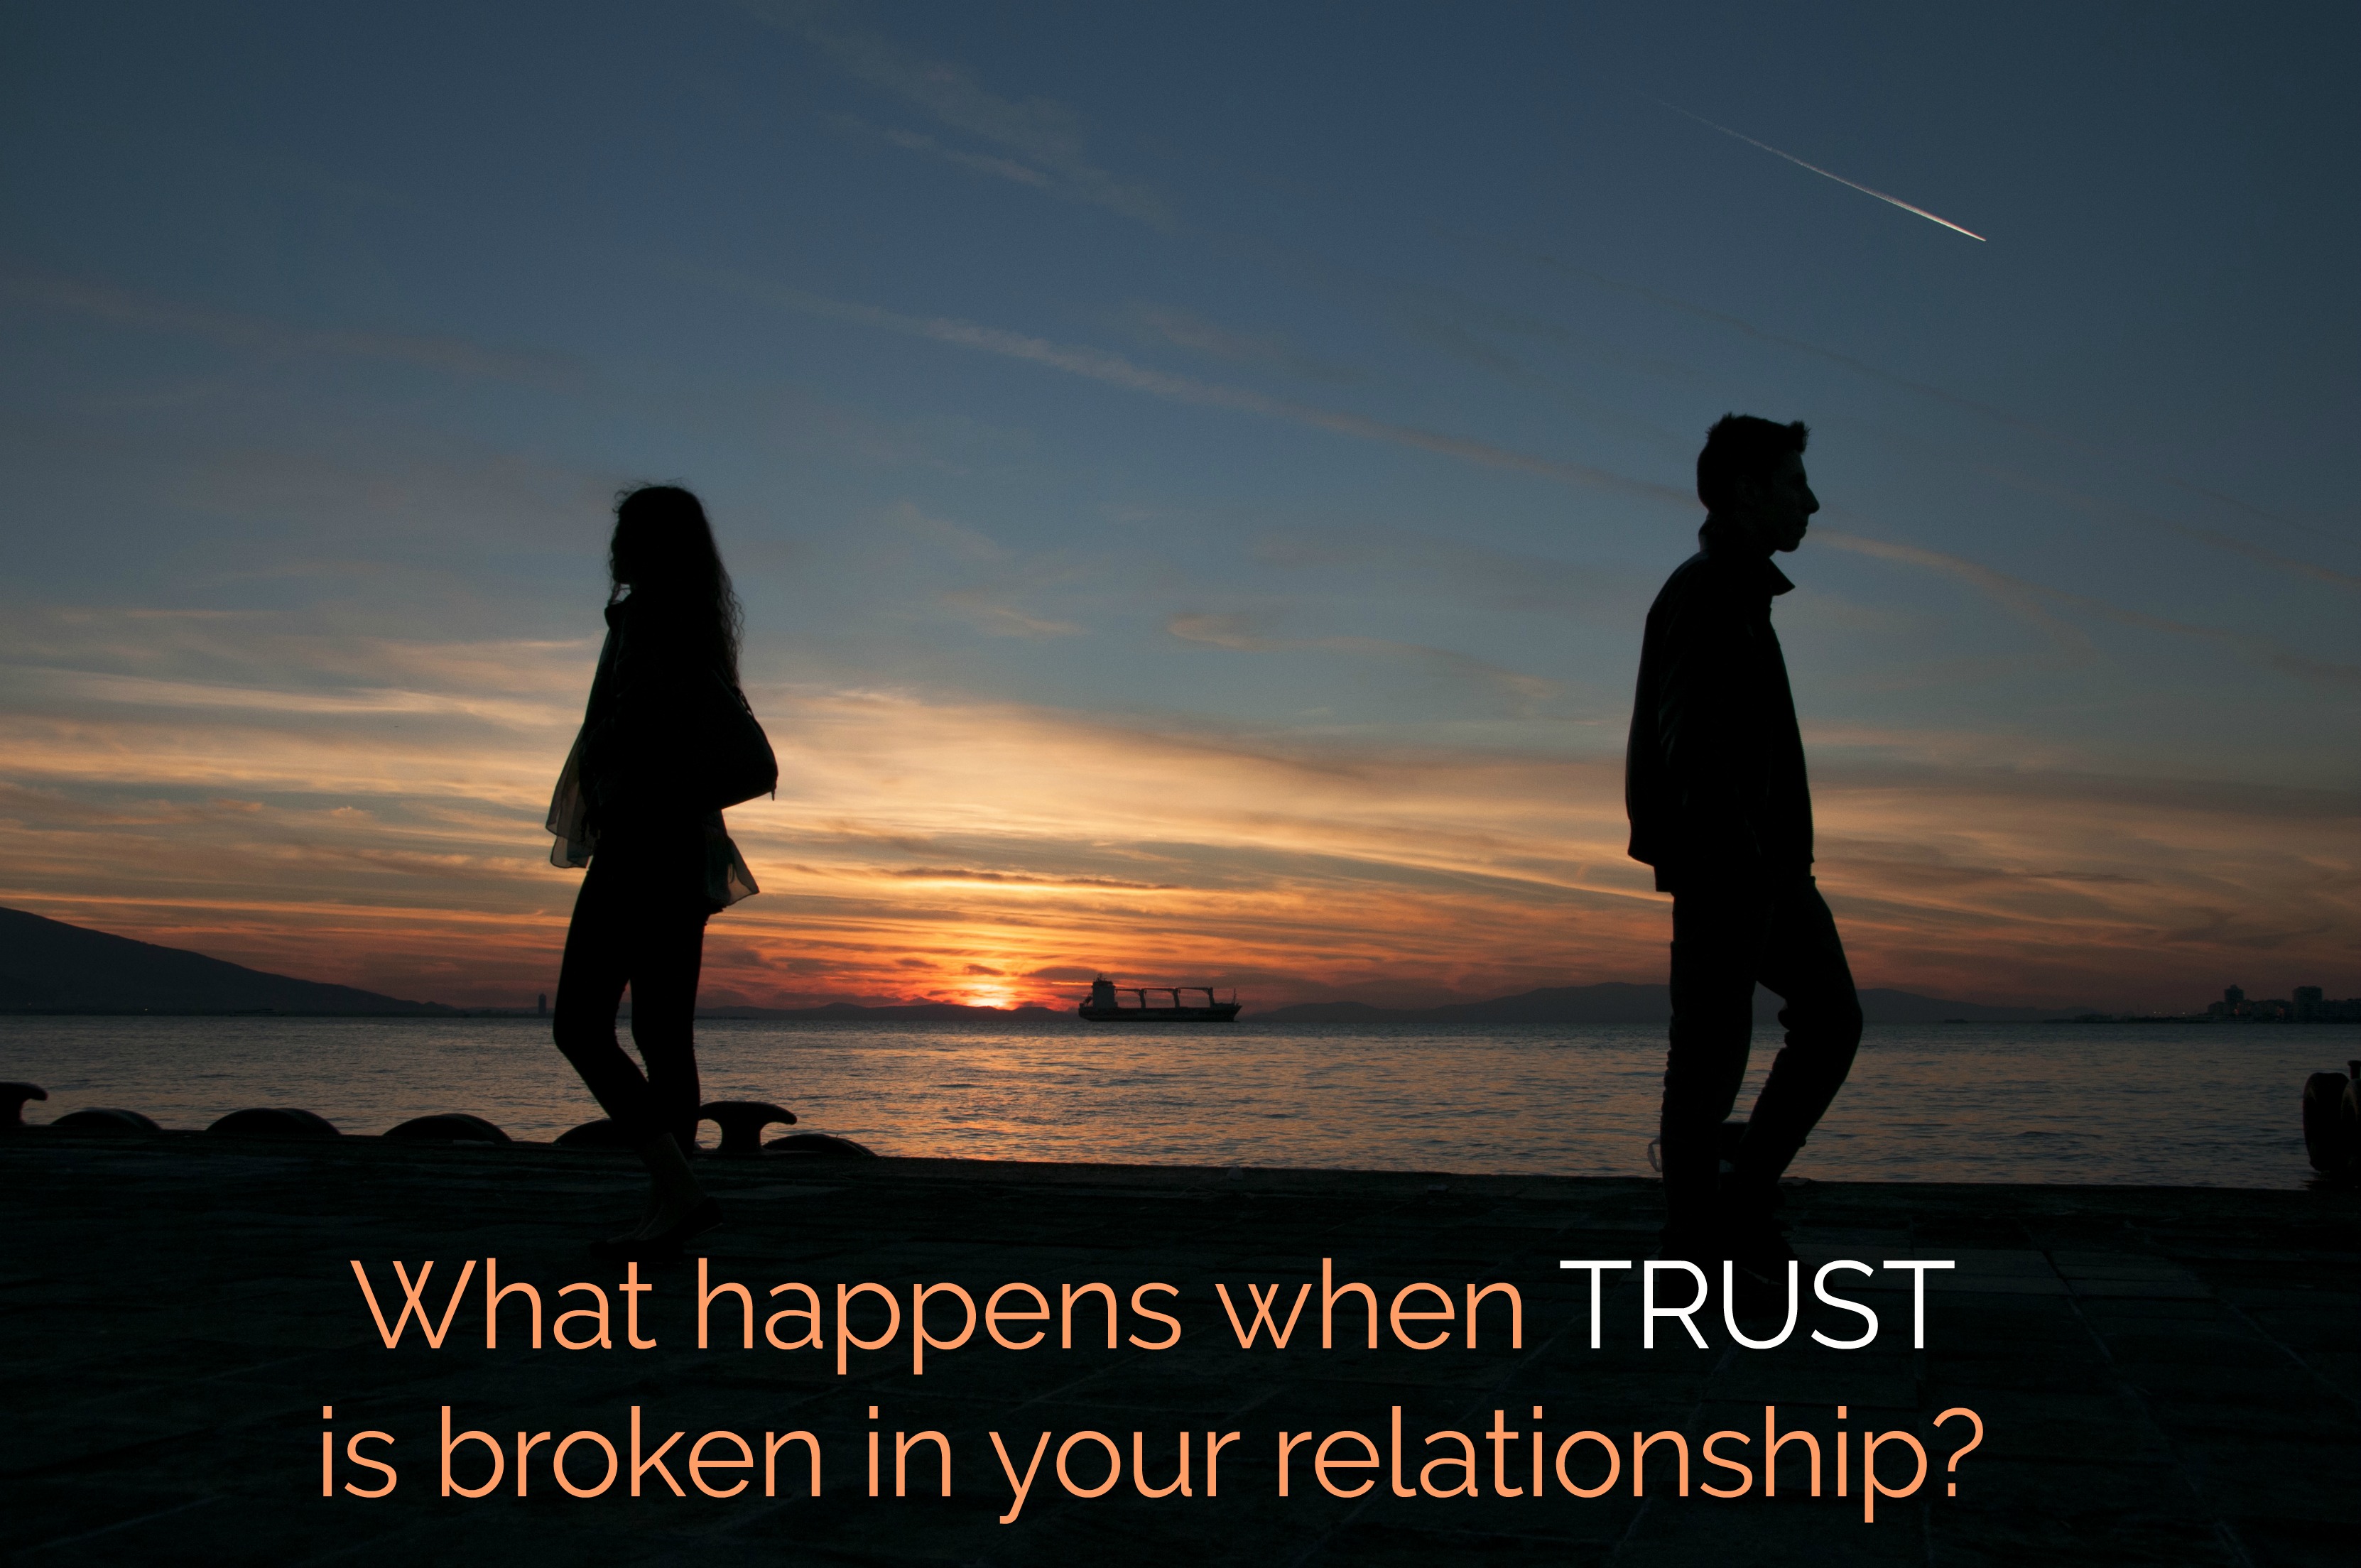 When trust has been broken in a relationship